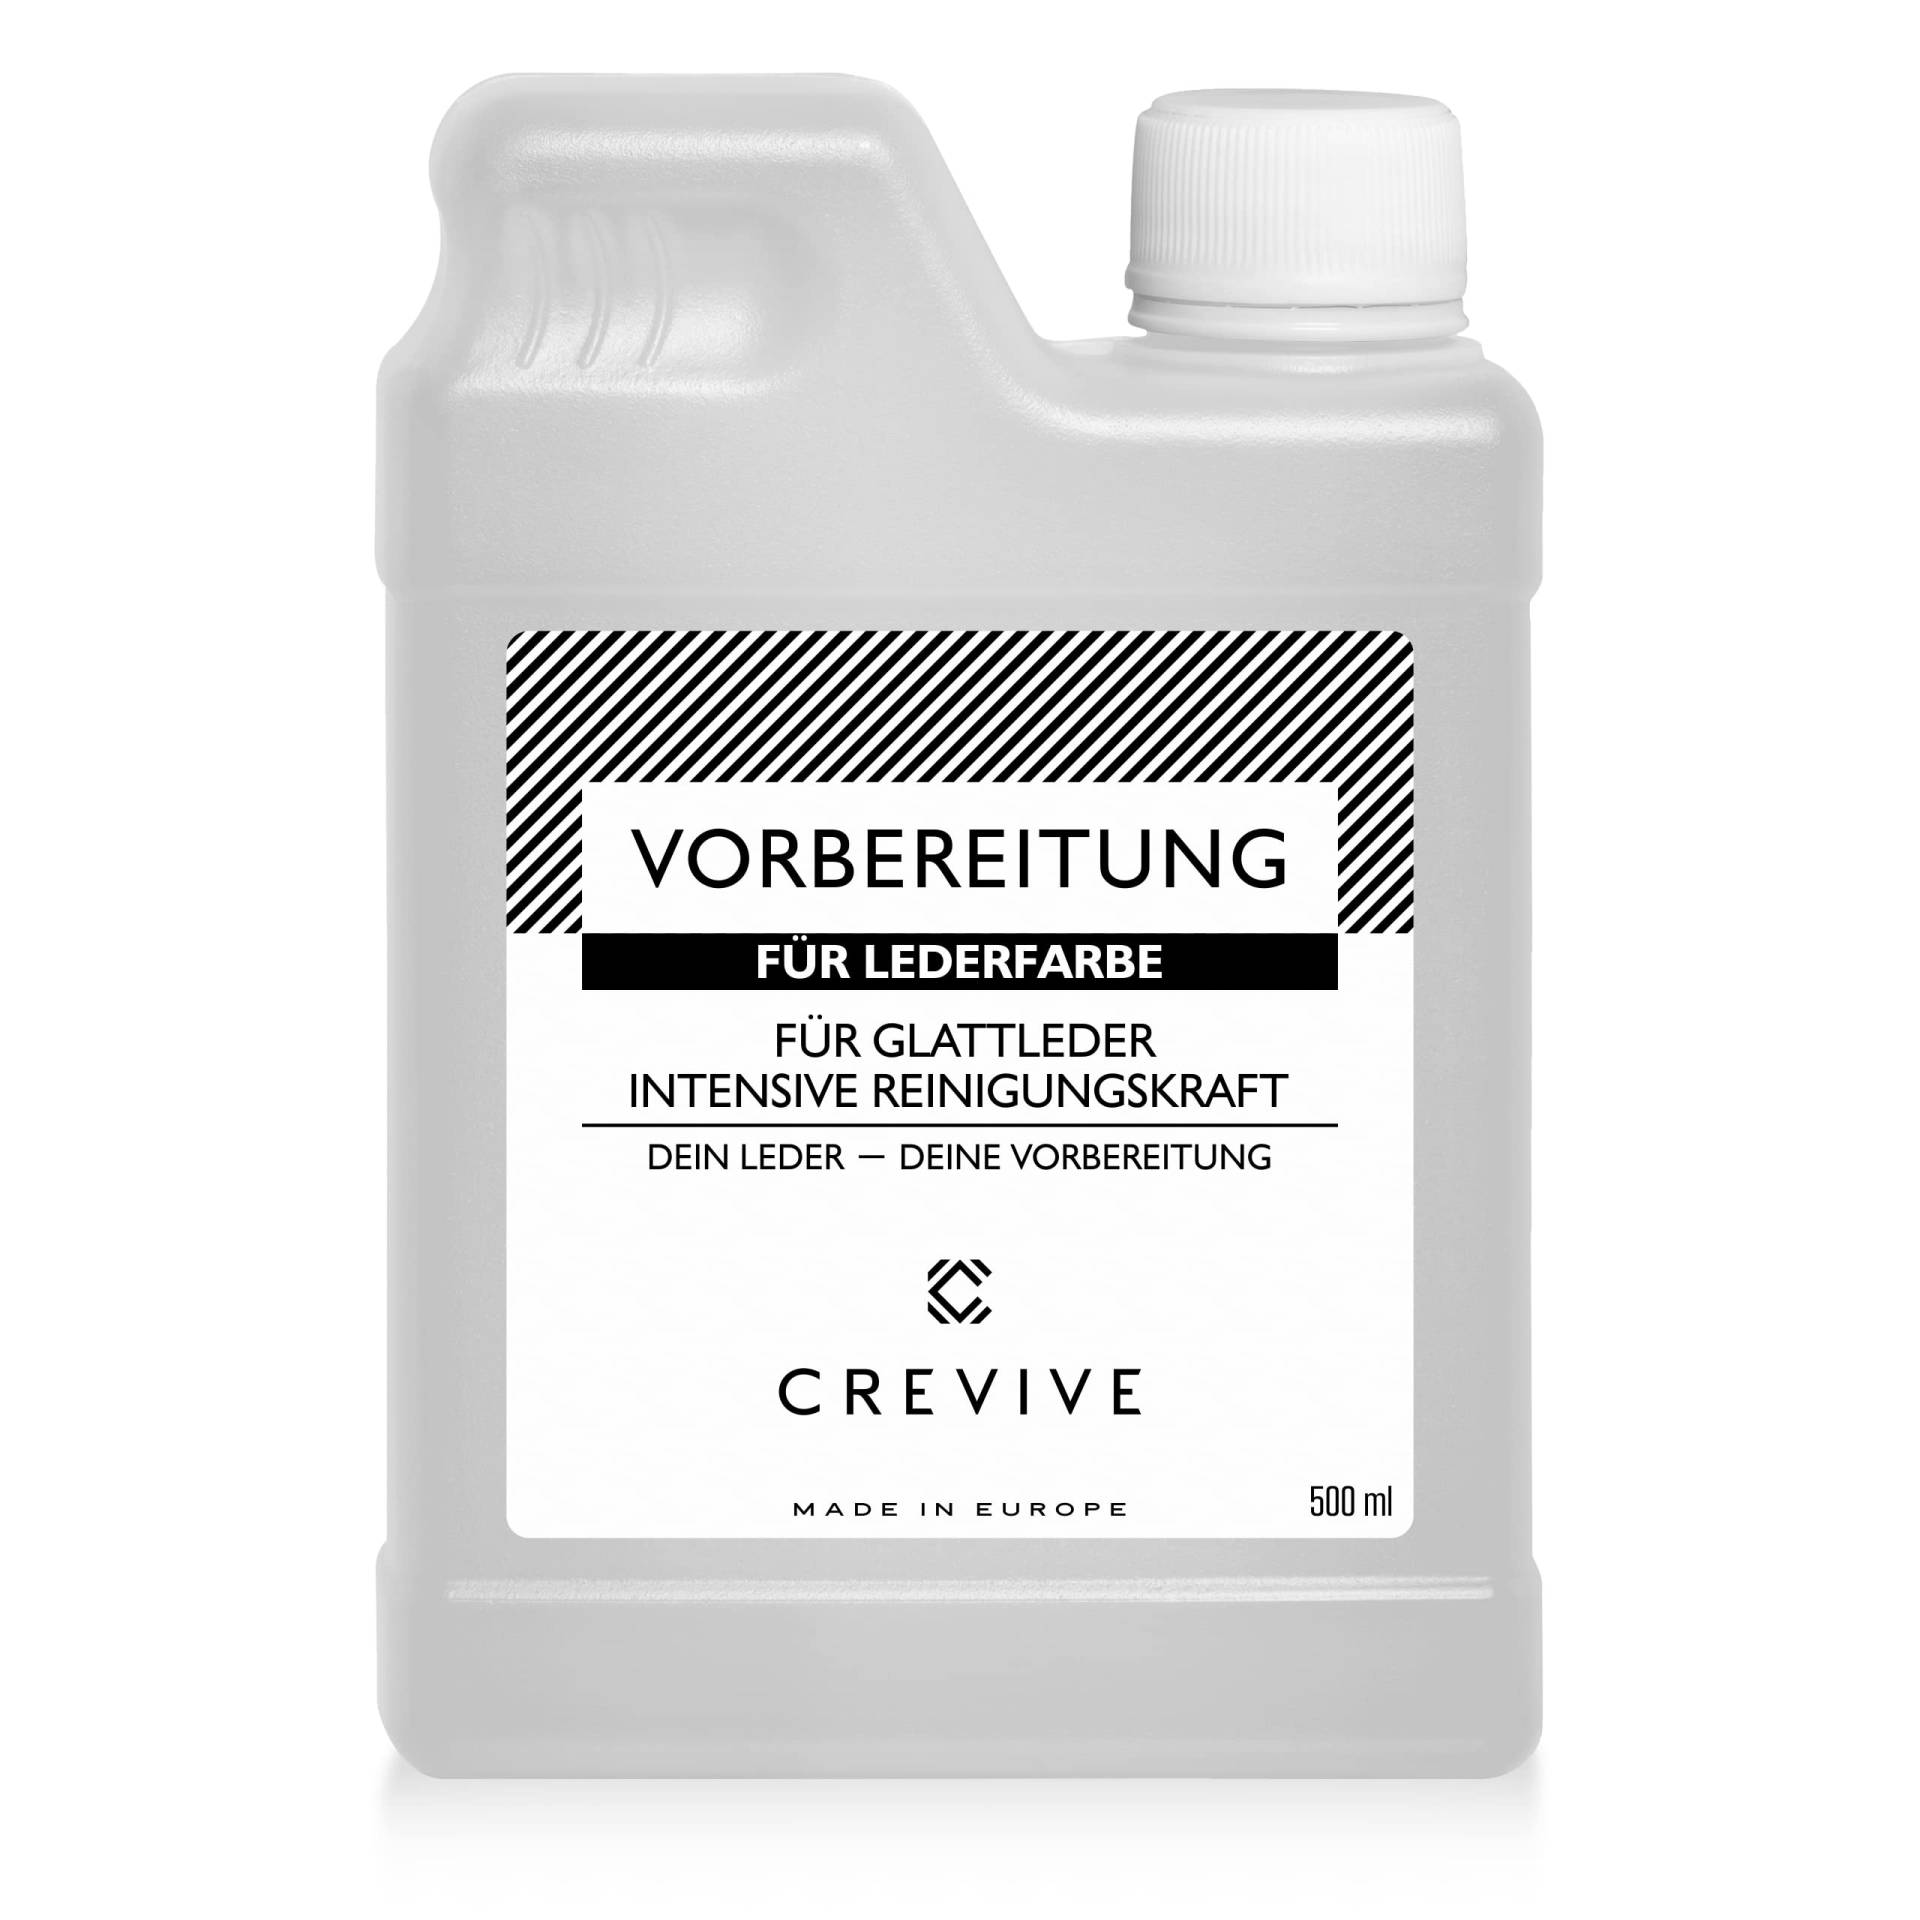 CREVIVE Vorbereitung 500 ml für Lederfarbe - Zum Reinigen und Entfetten des Leders vor der Lederfärbung von CREVIVE